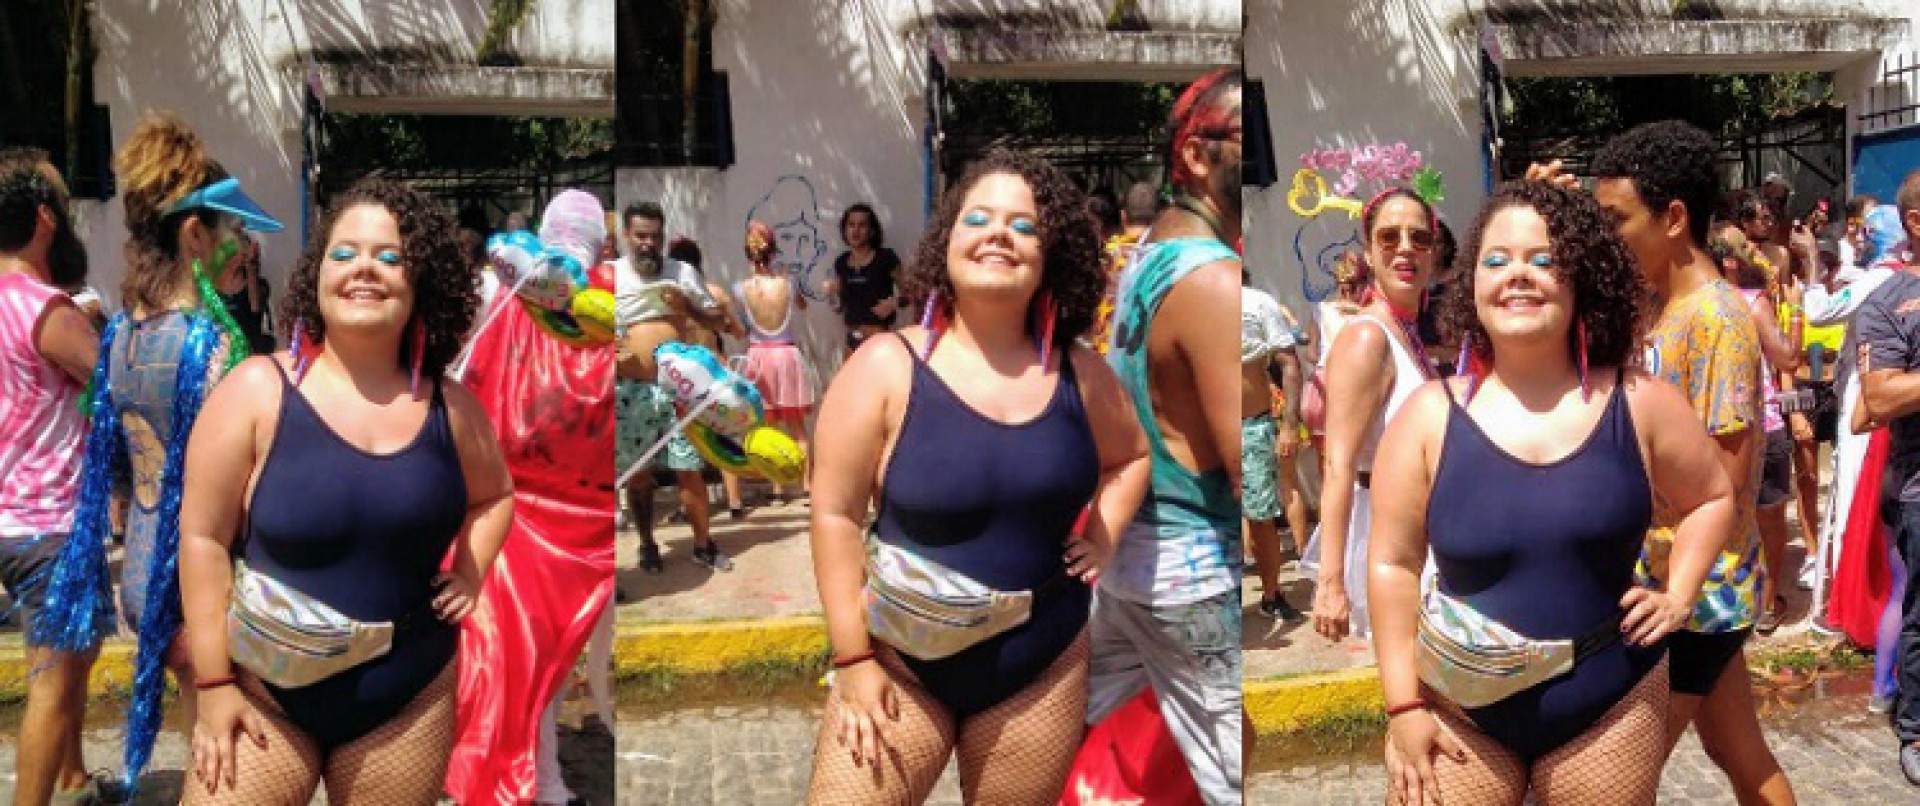 Apaixonada pelo Carnaval, Mariana Bessa, 21, folia pelos mais diversos lugares da Cidade. Em 2021, vive imensa saudade da festa